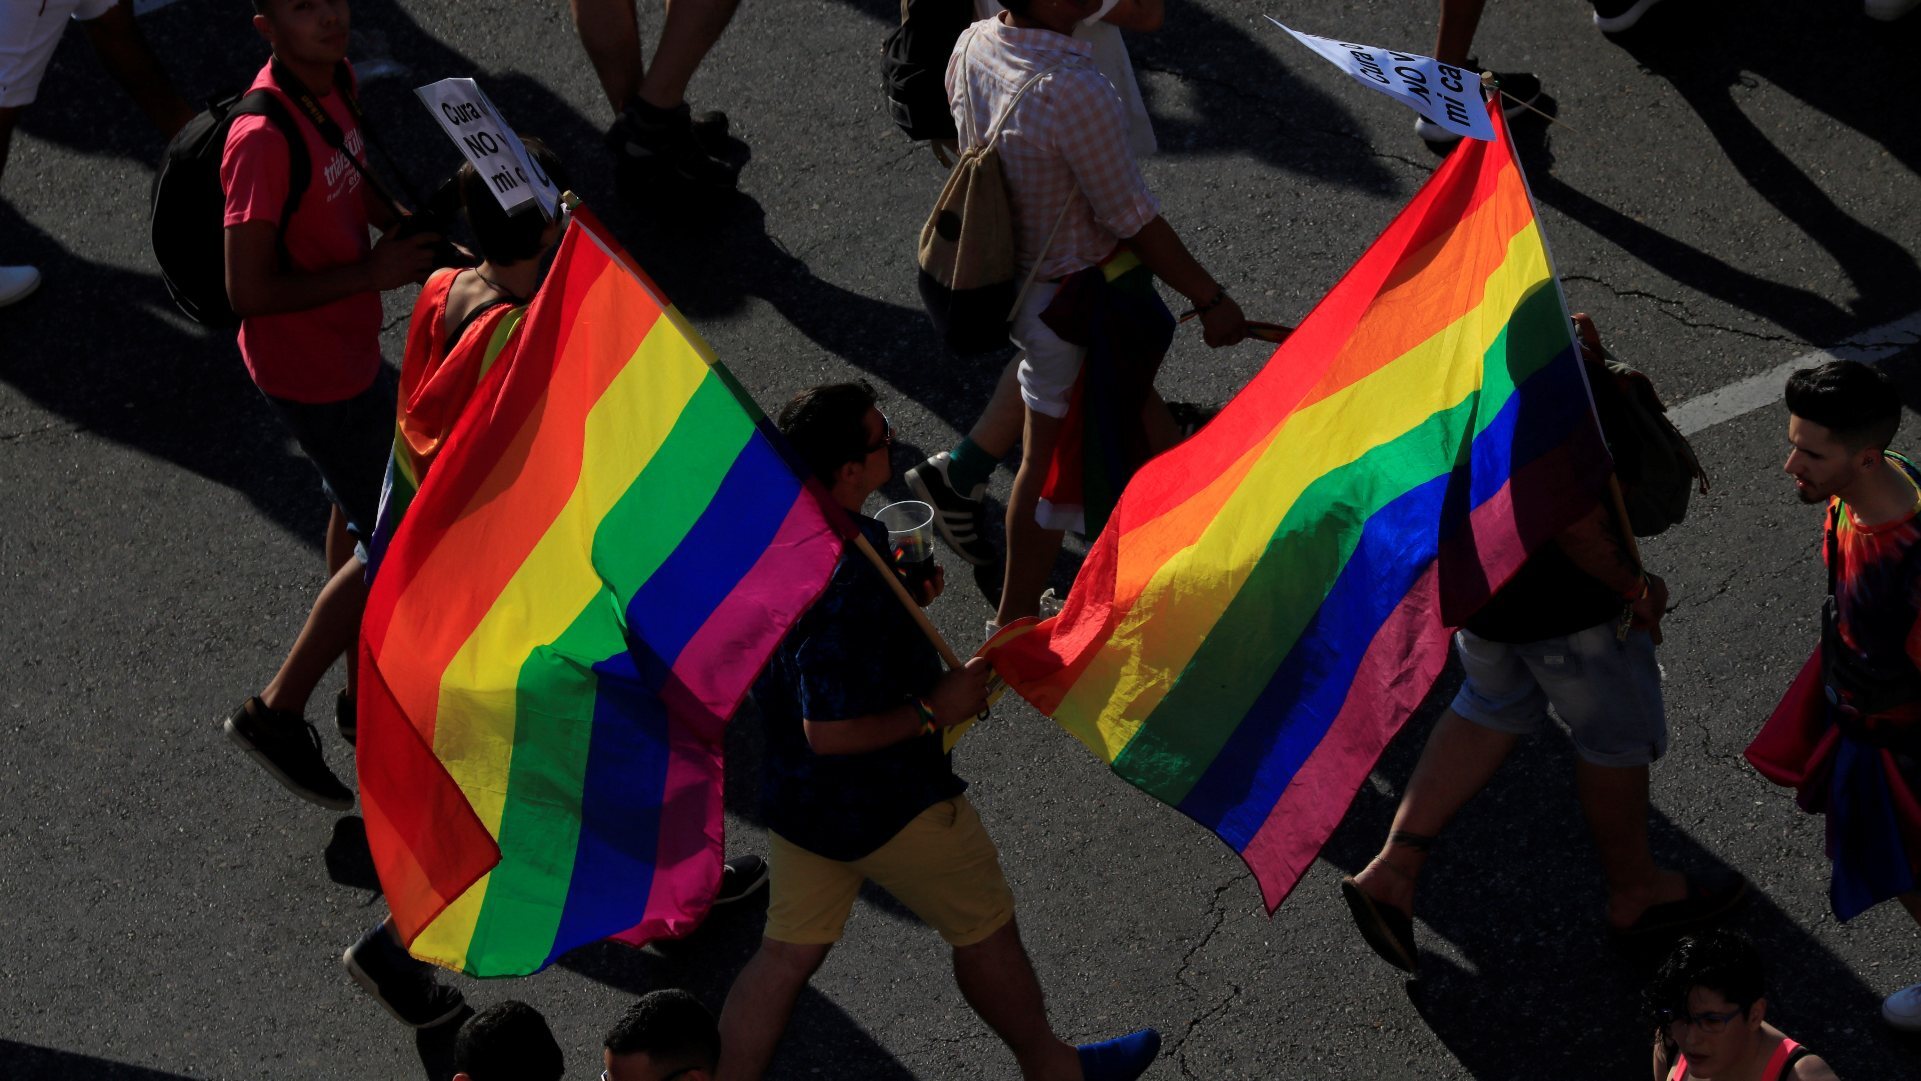 El Real Madrid podría ser sancionado por no portar la bandera LGBT